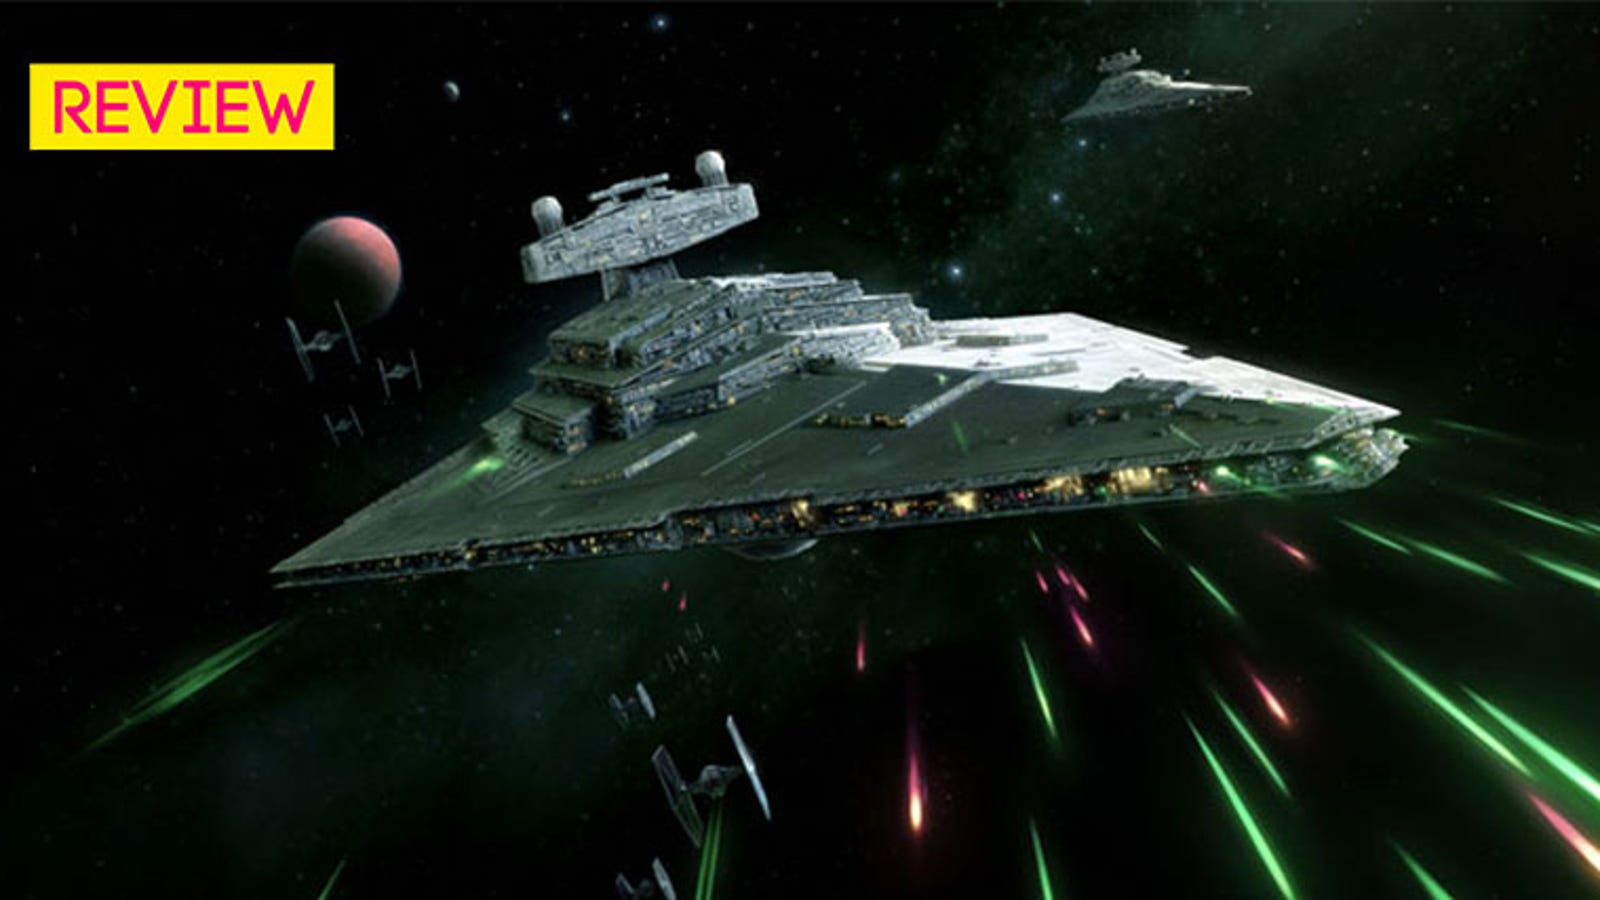 star wars armada clone wars